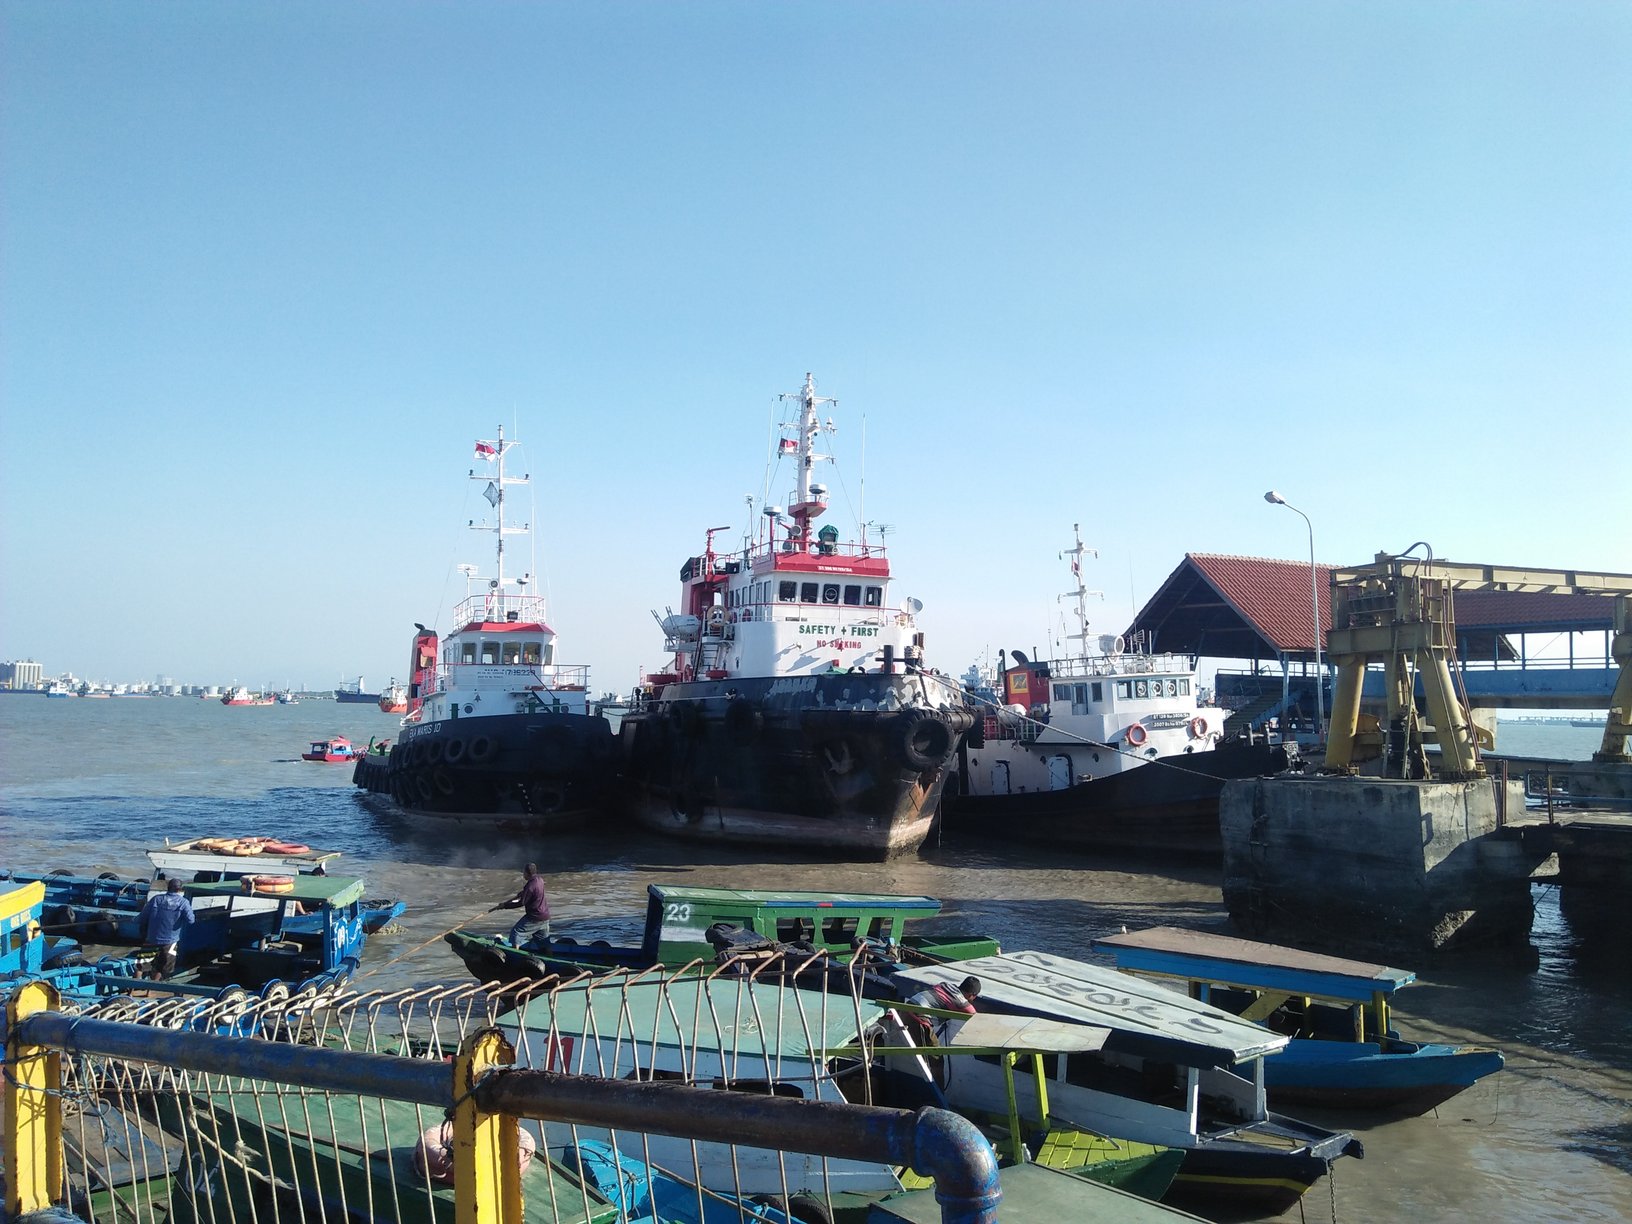 Pelabuhan Kamal